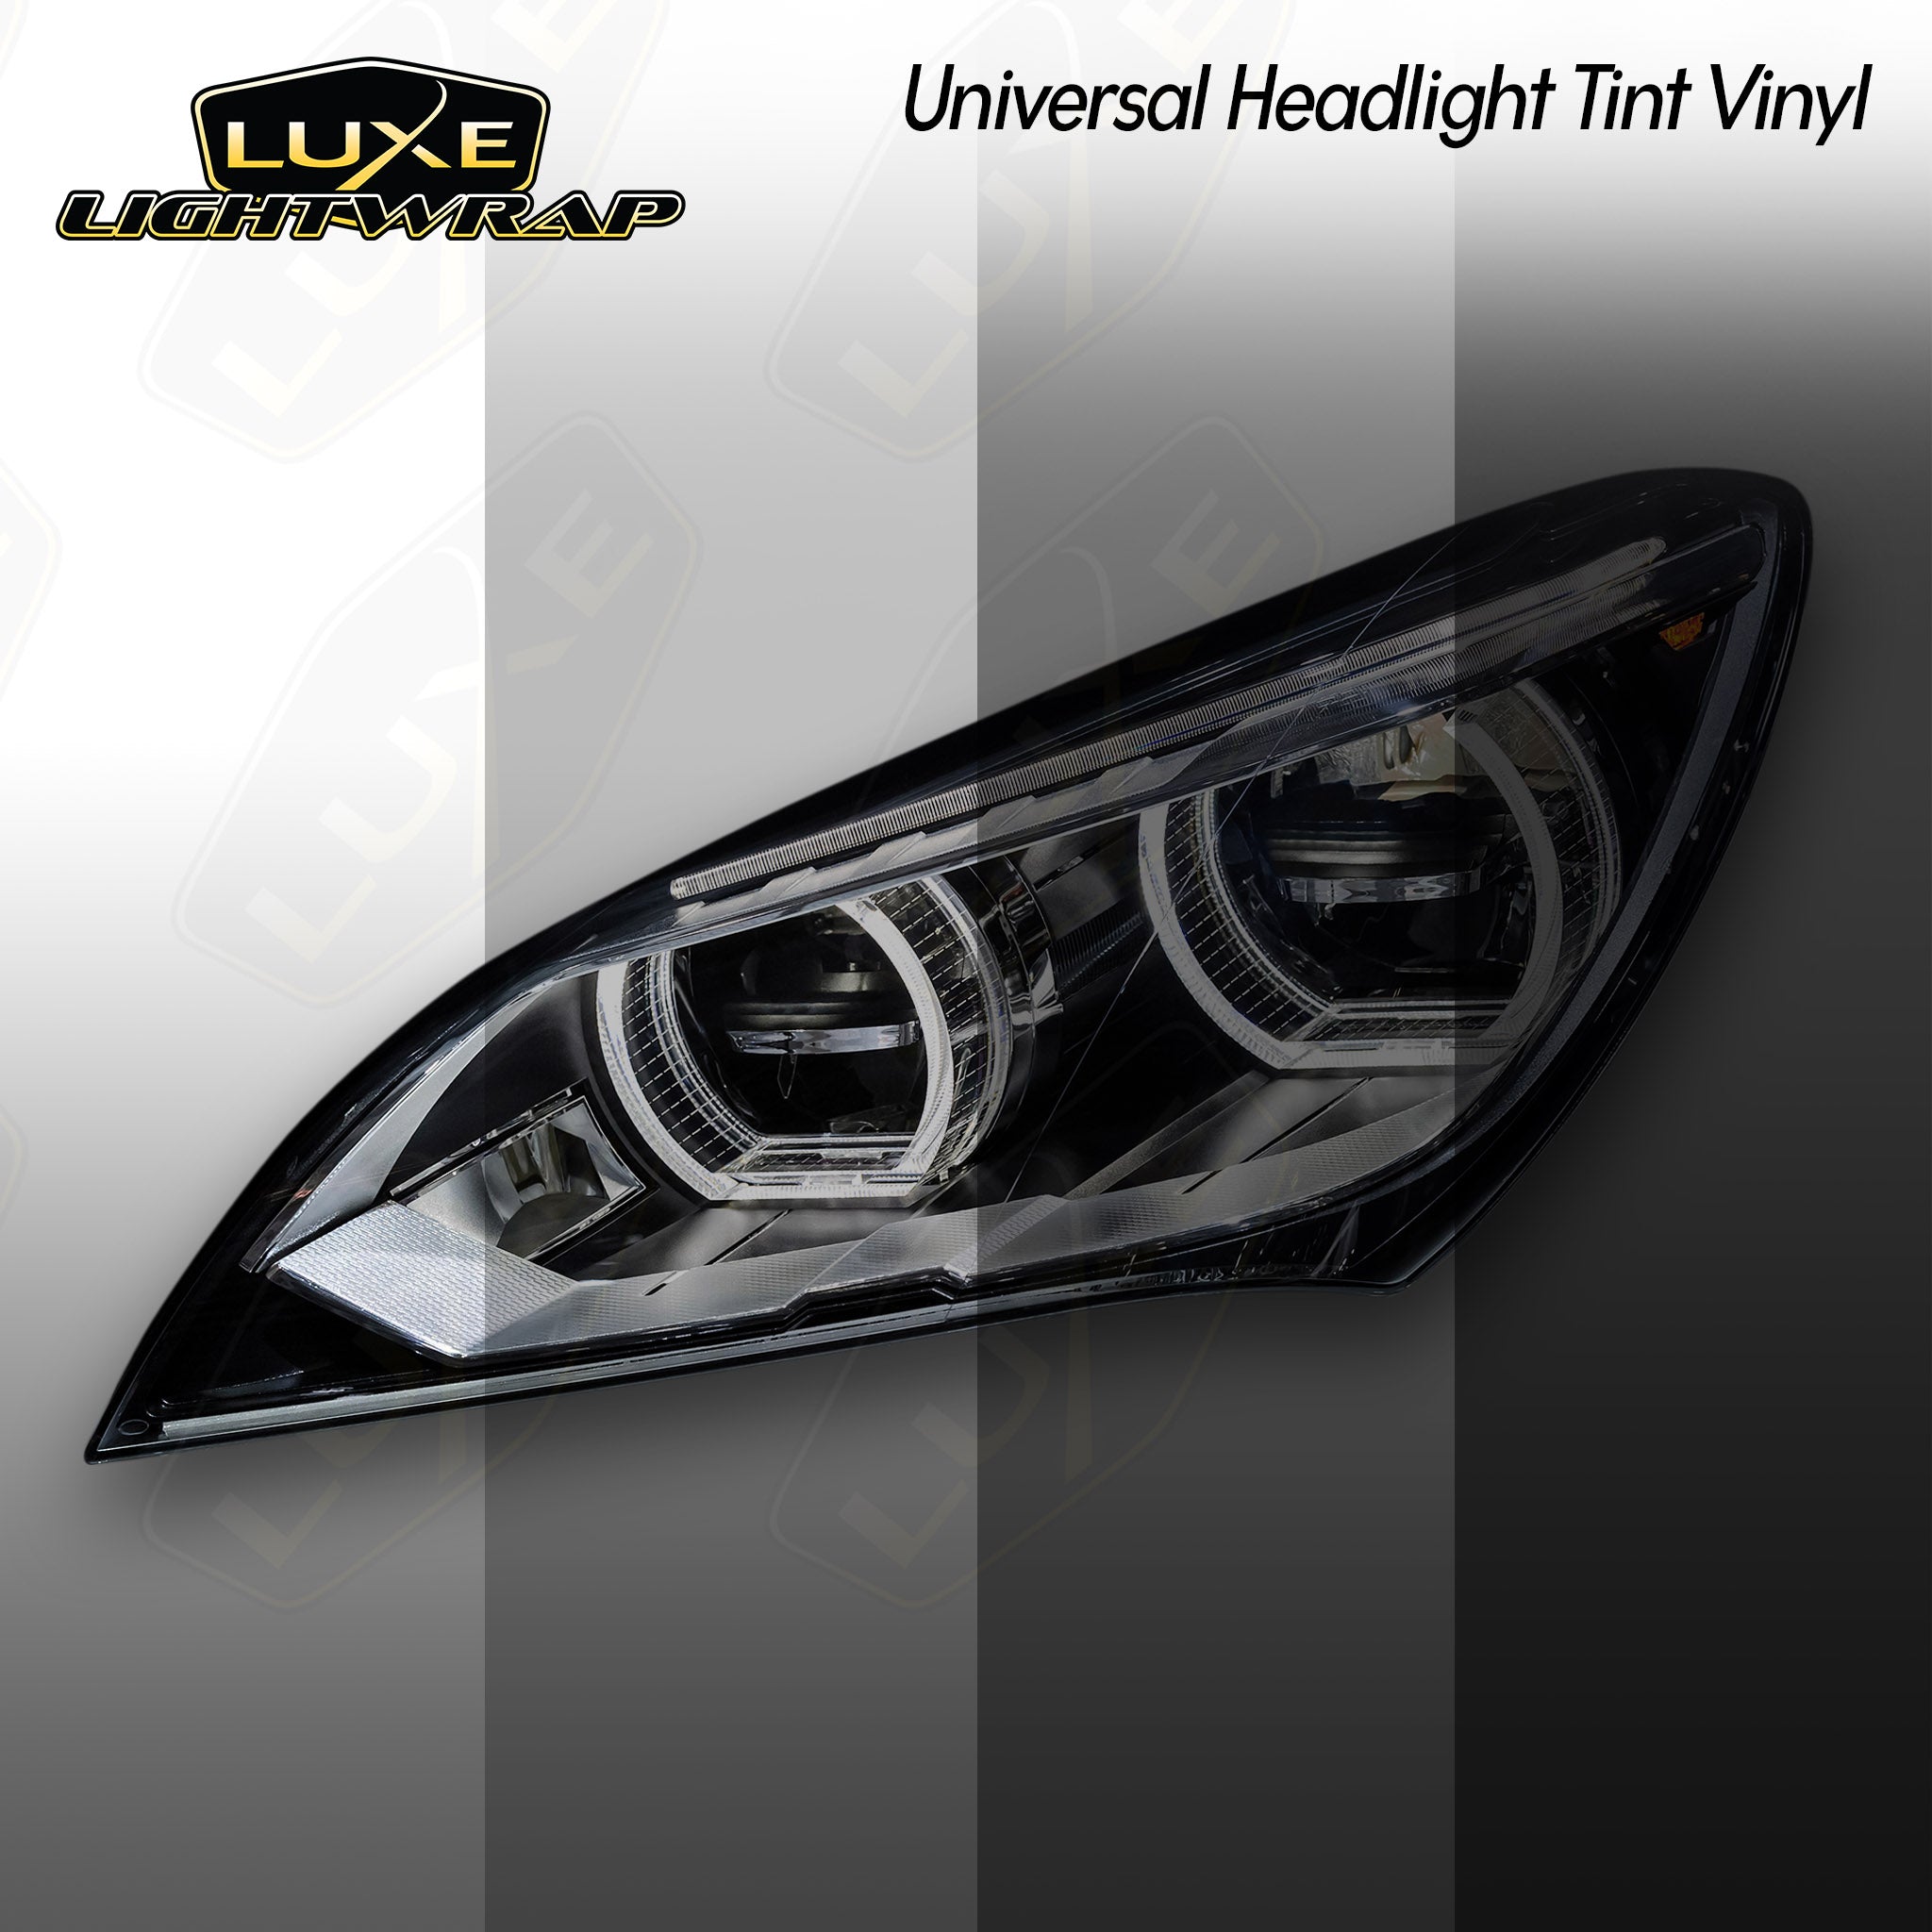 Universal Vinyl Car Light Tint Film for Headlight, Fog Light, Tail